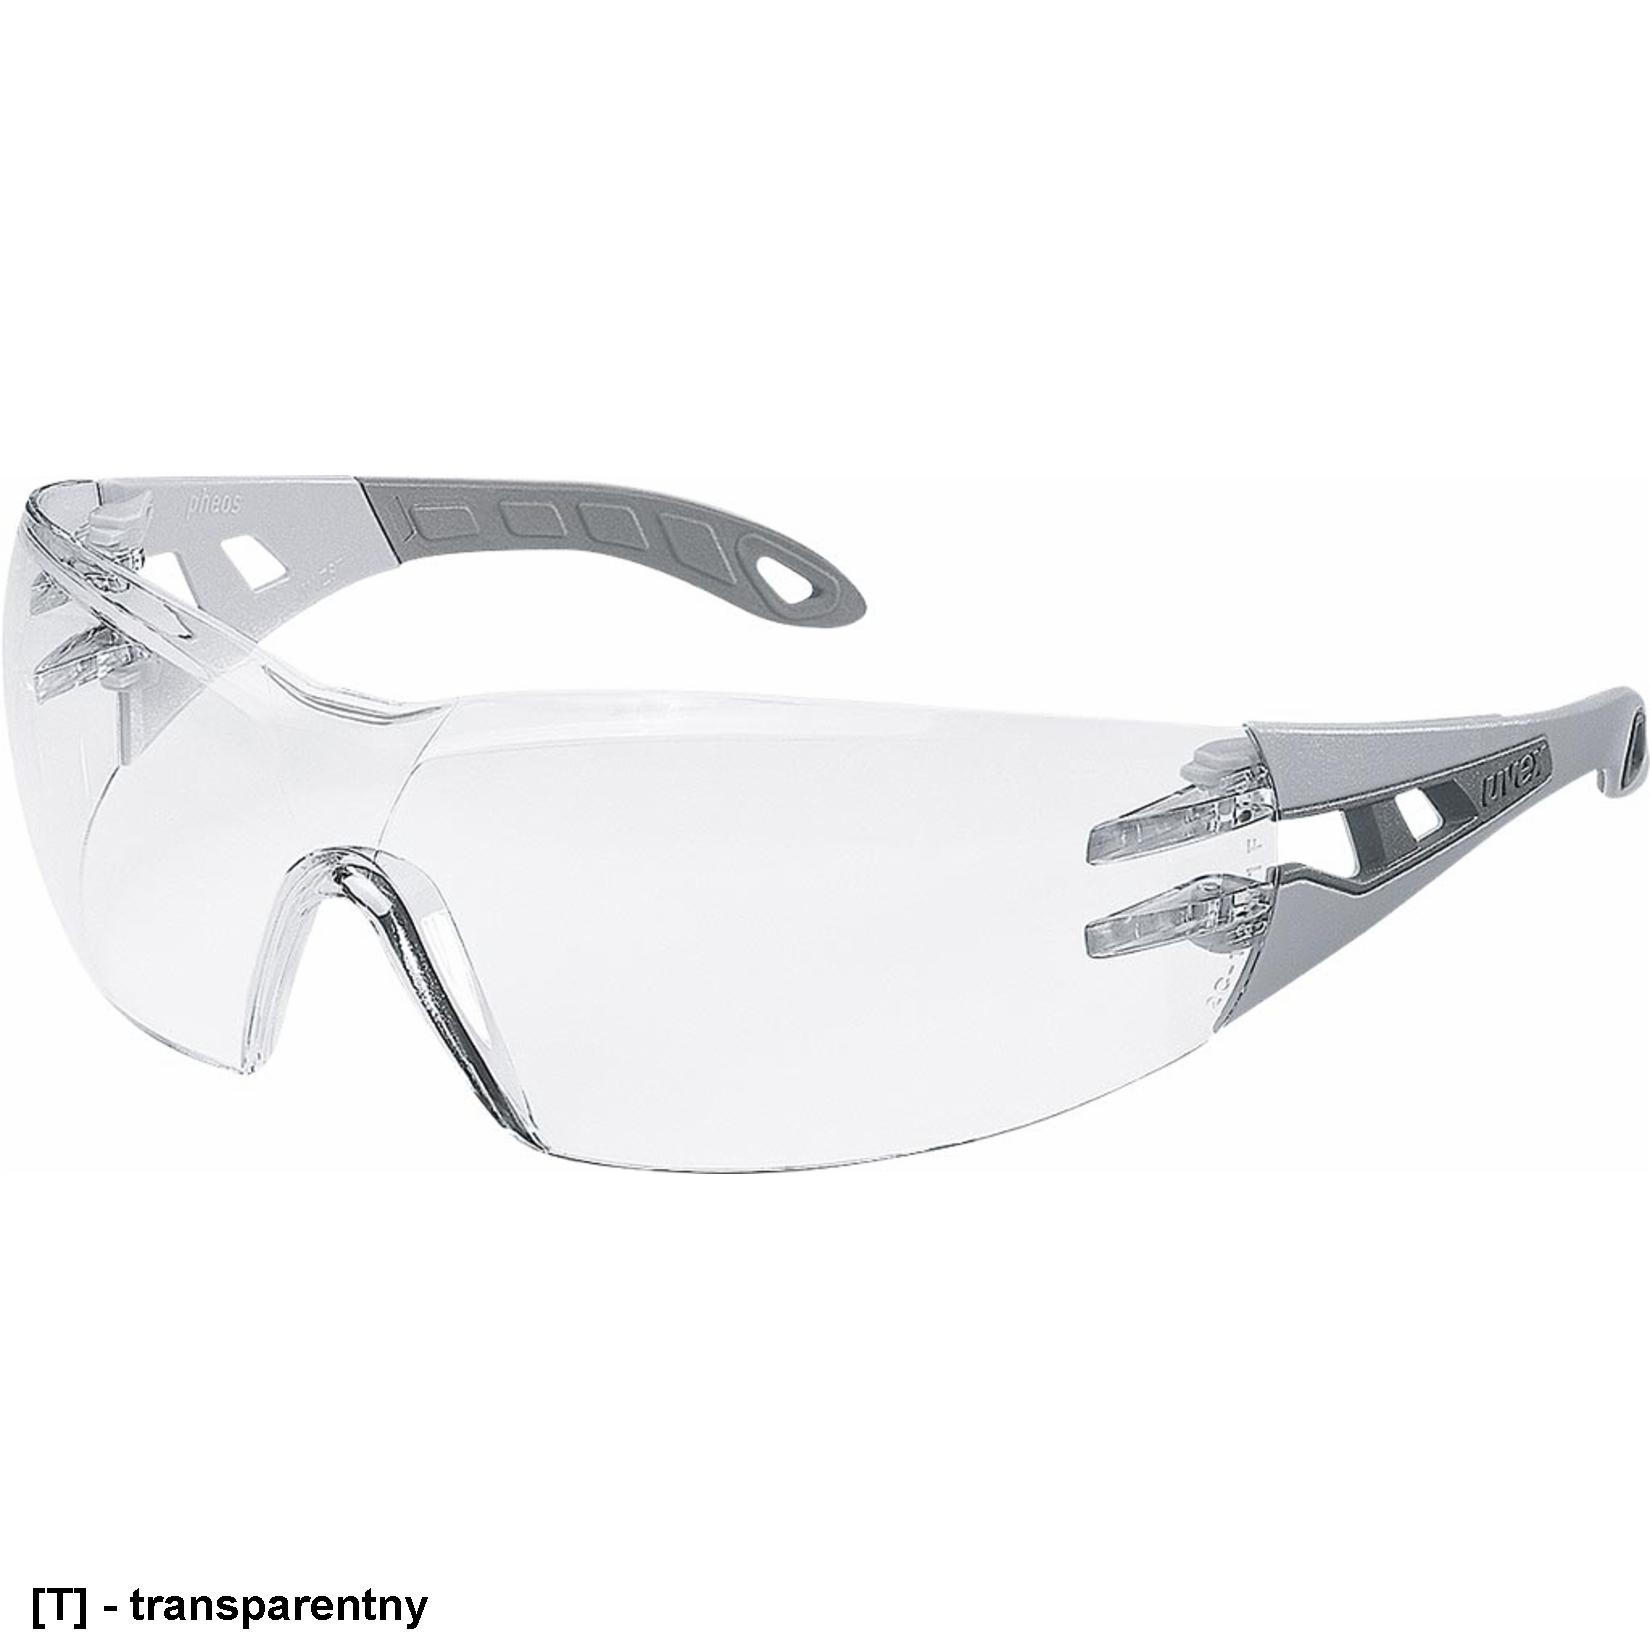 UX-OO- PHEOS - okulary ochronne, szybka z poliwęglanu, niezaparowująca powłoka supravision excellence, modny design, dwusferyczne szybki, właściwości dielektryczne - 2 kolory.